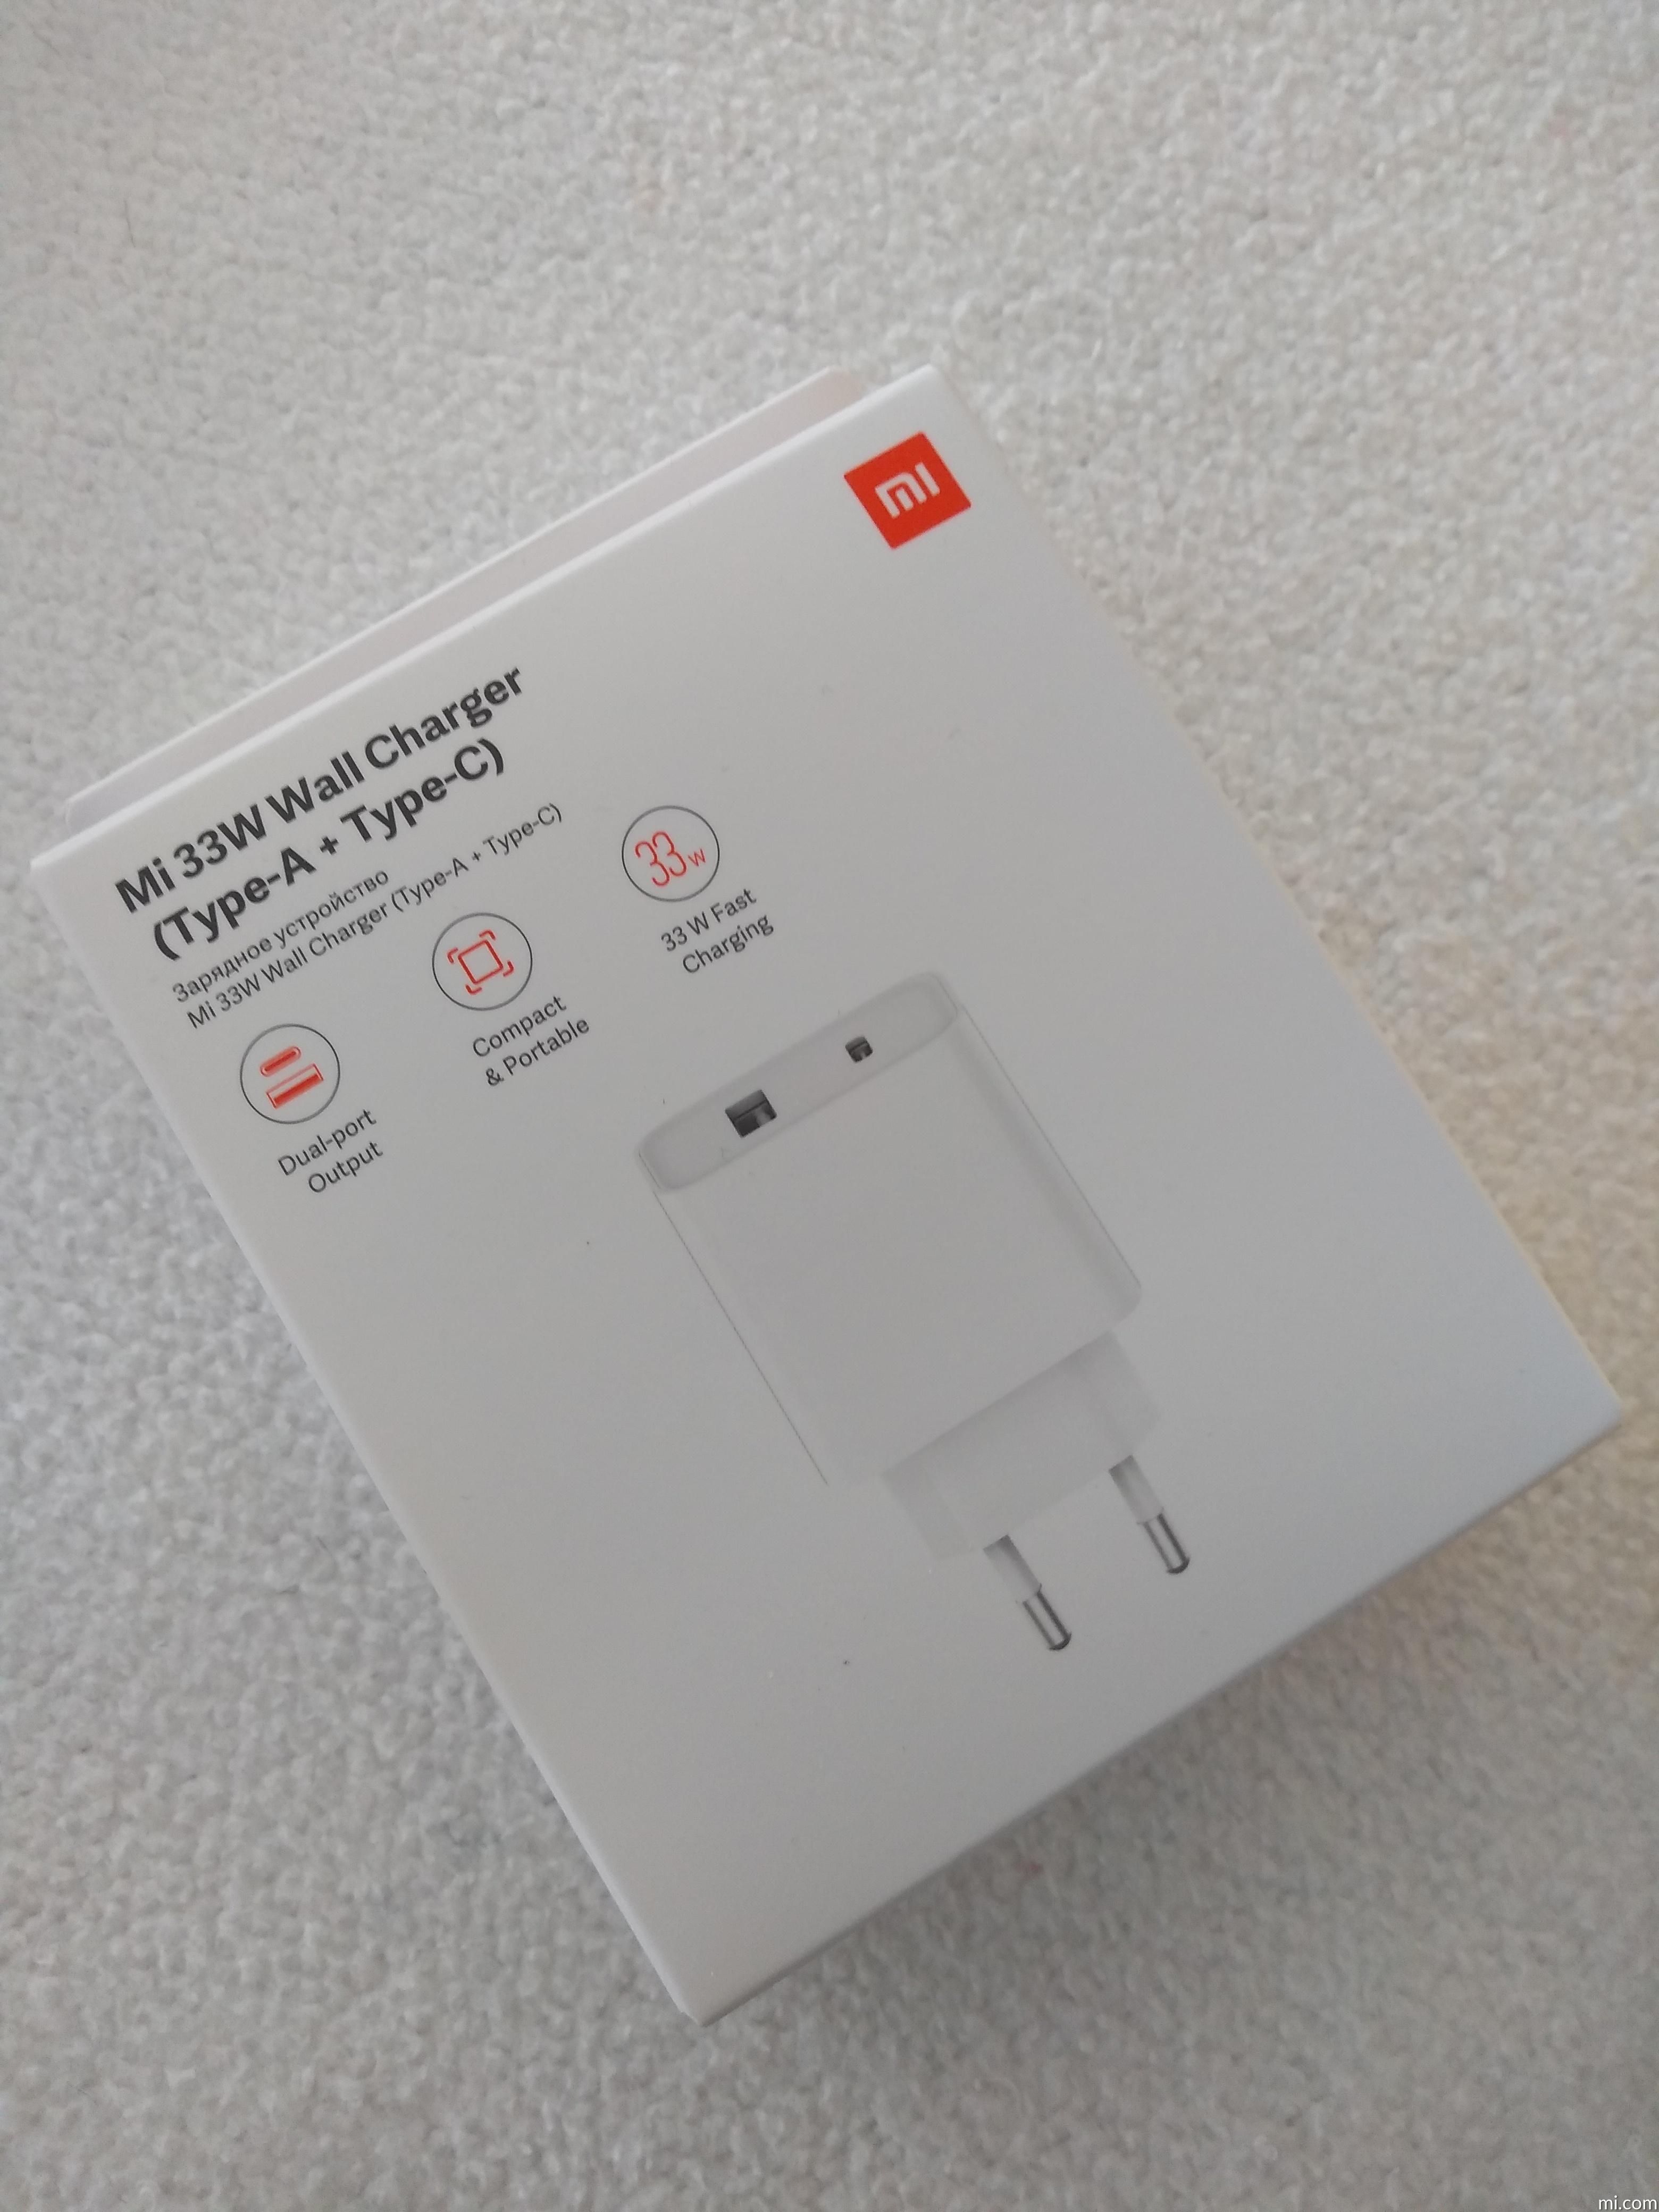 Xiaomi Mi Charger 33W, un nuevo cargador que nos gustaría ver en el mercado  global - Noticias Xiaomi - XIAOMIADICTOS